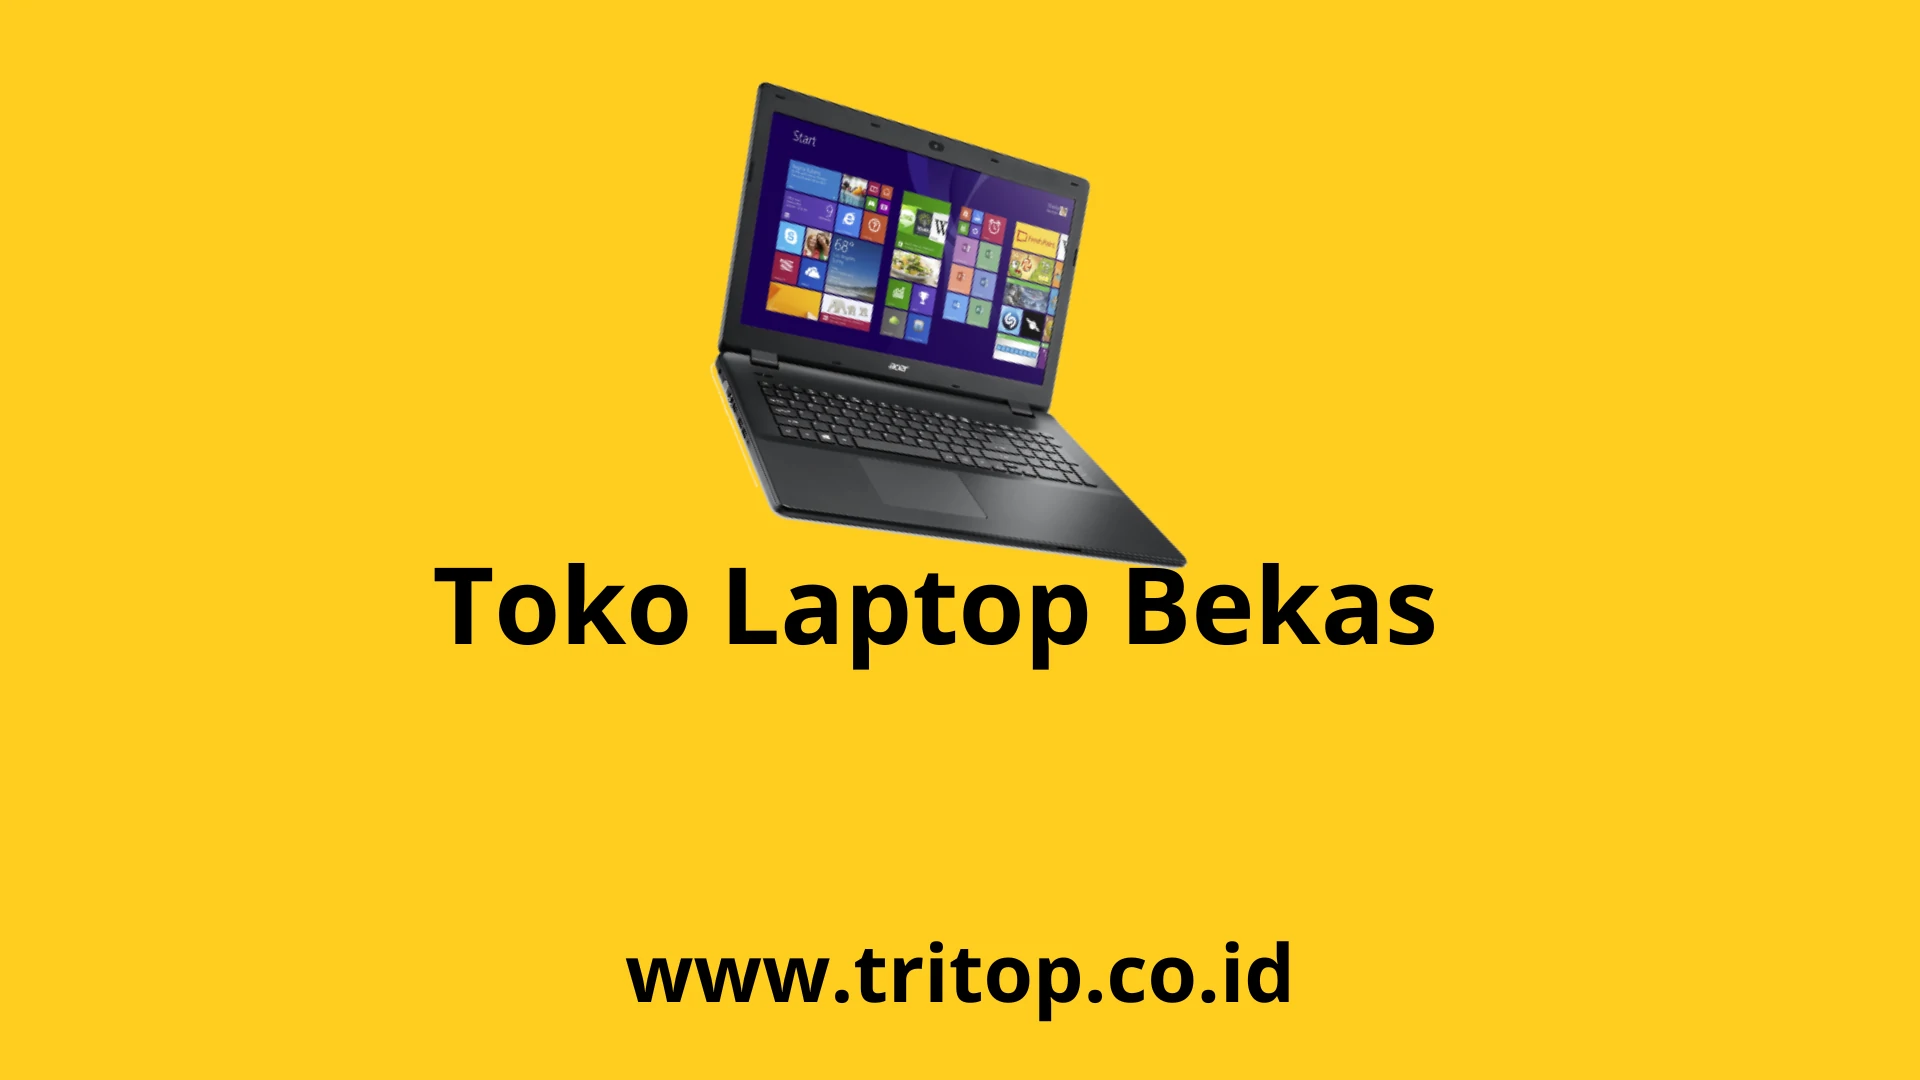 Toko Laptop Bekas Tritop.co.id